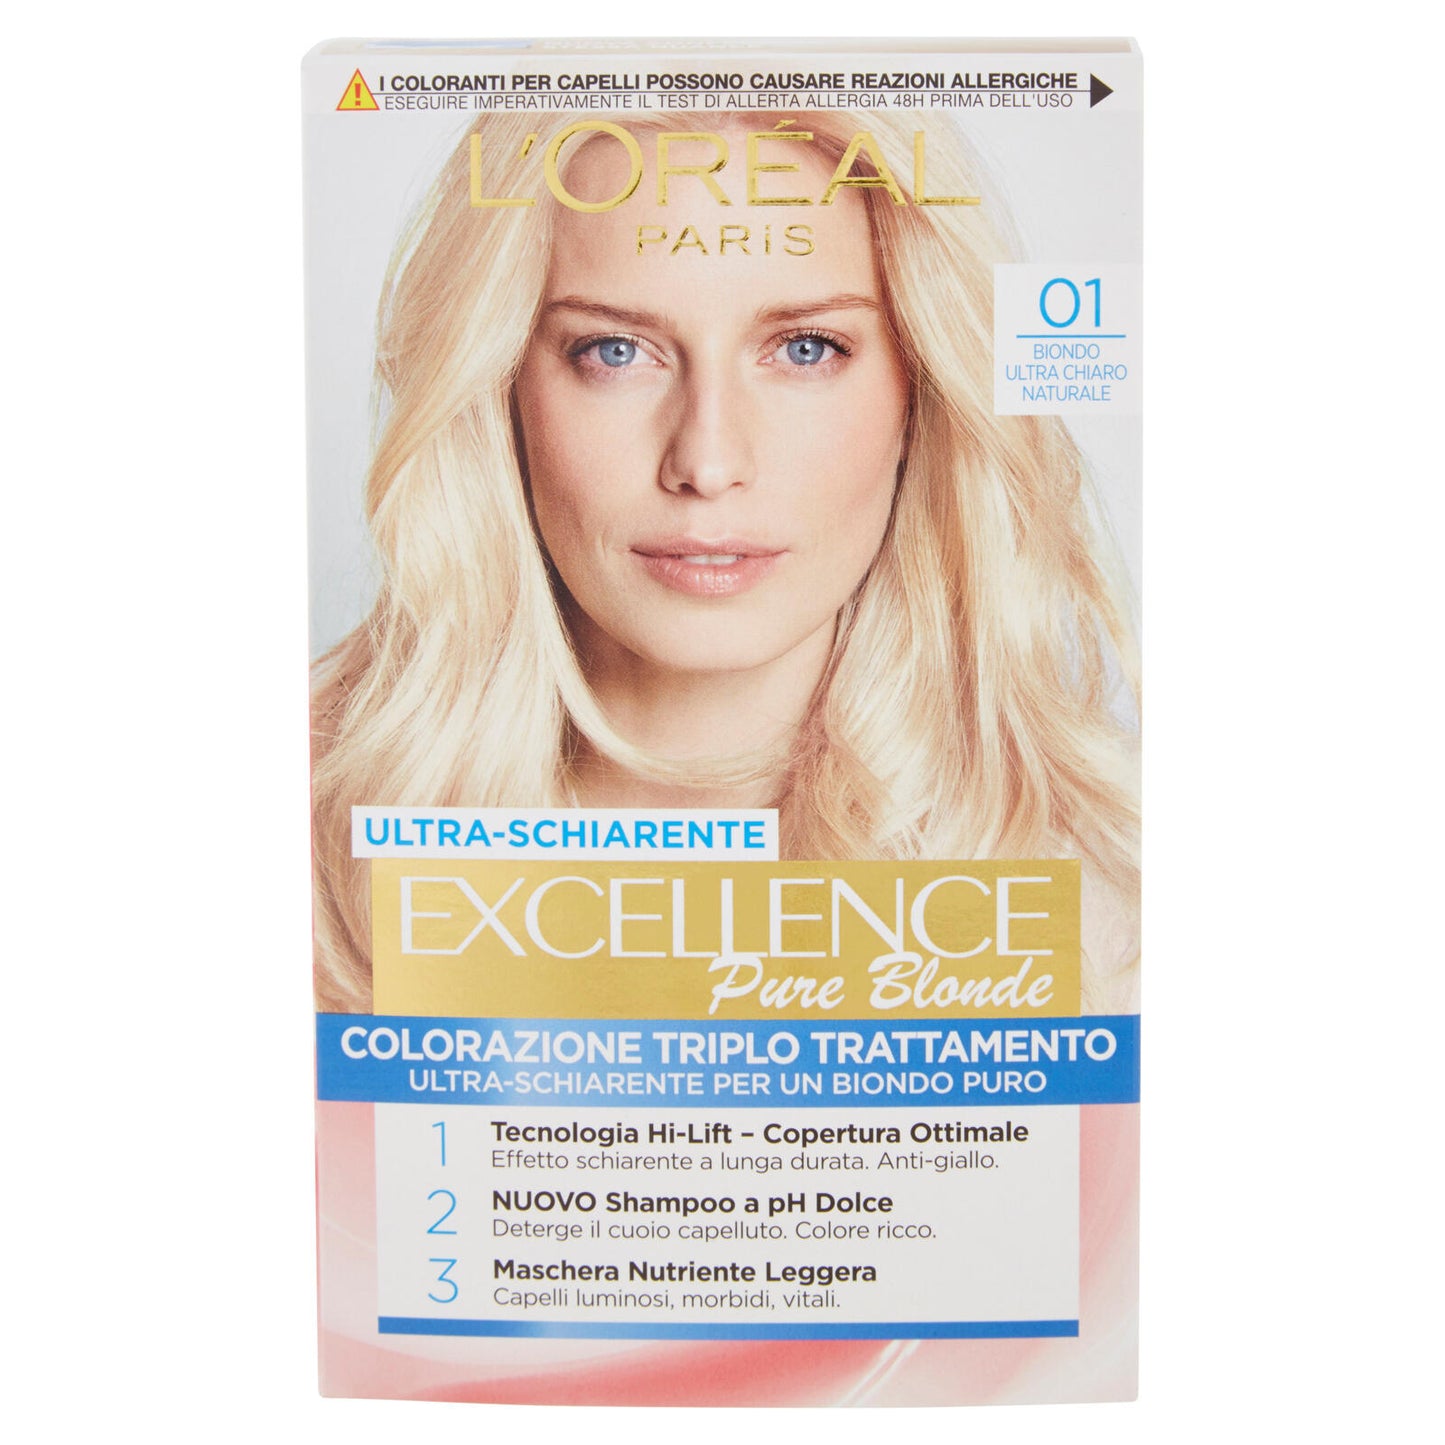 L'Oréal Paris Excellence Crema colorante triplo trattamento avanzato, 01 Biondo UltraChiaro Naturale